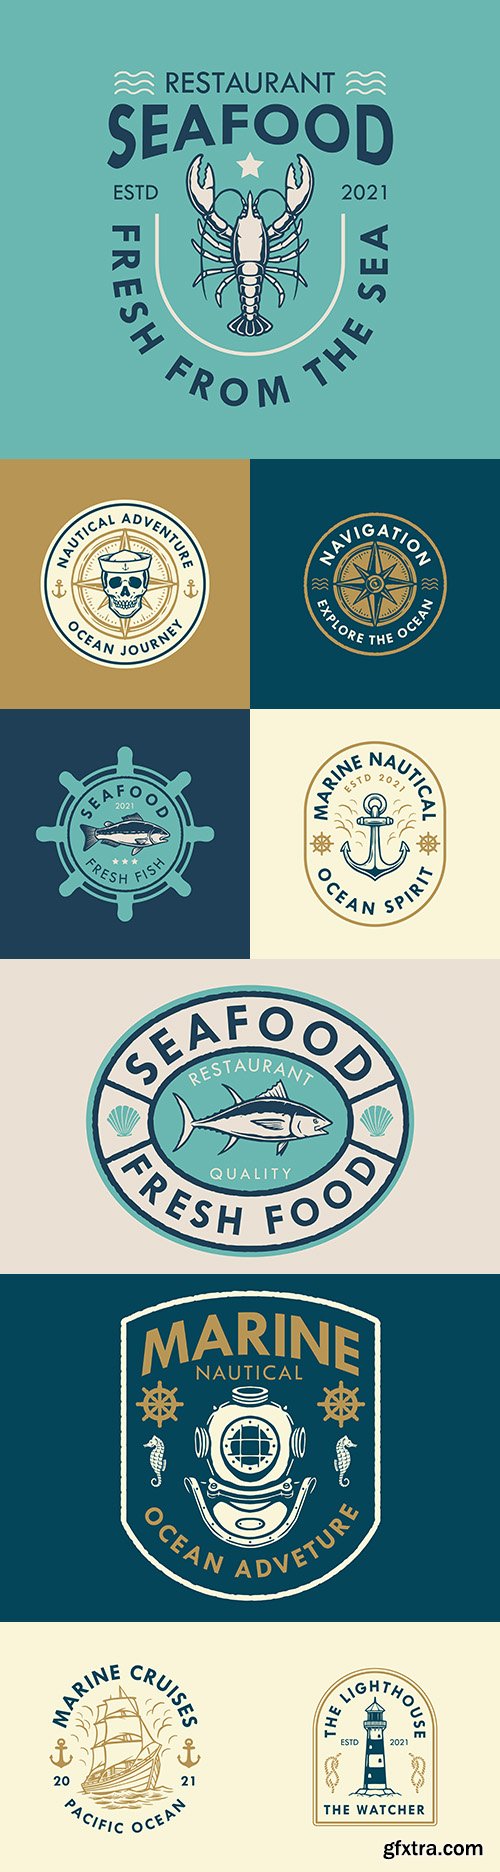 Marine logo design and retro style badges illustration
